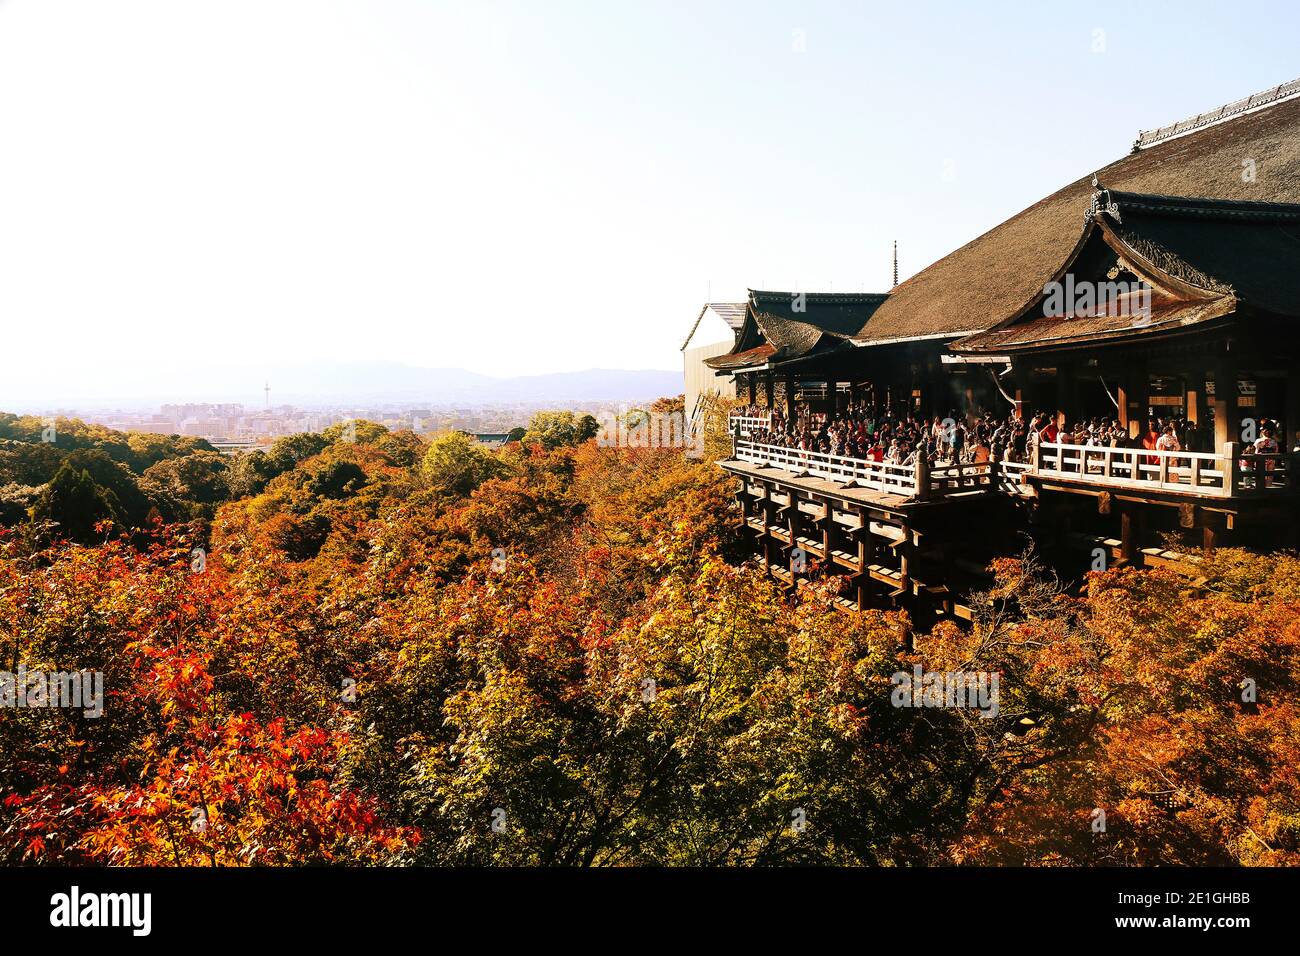 Exterior view of the Kiyomizu-dera Temple in autumn, Kyoto, Japan. Stock Photo